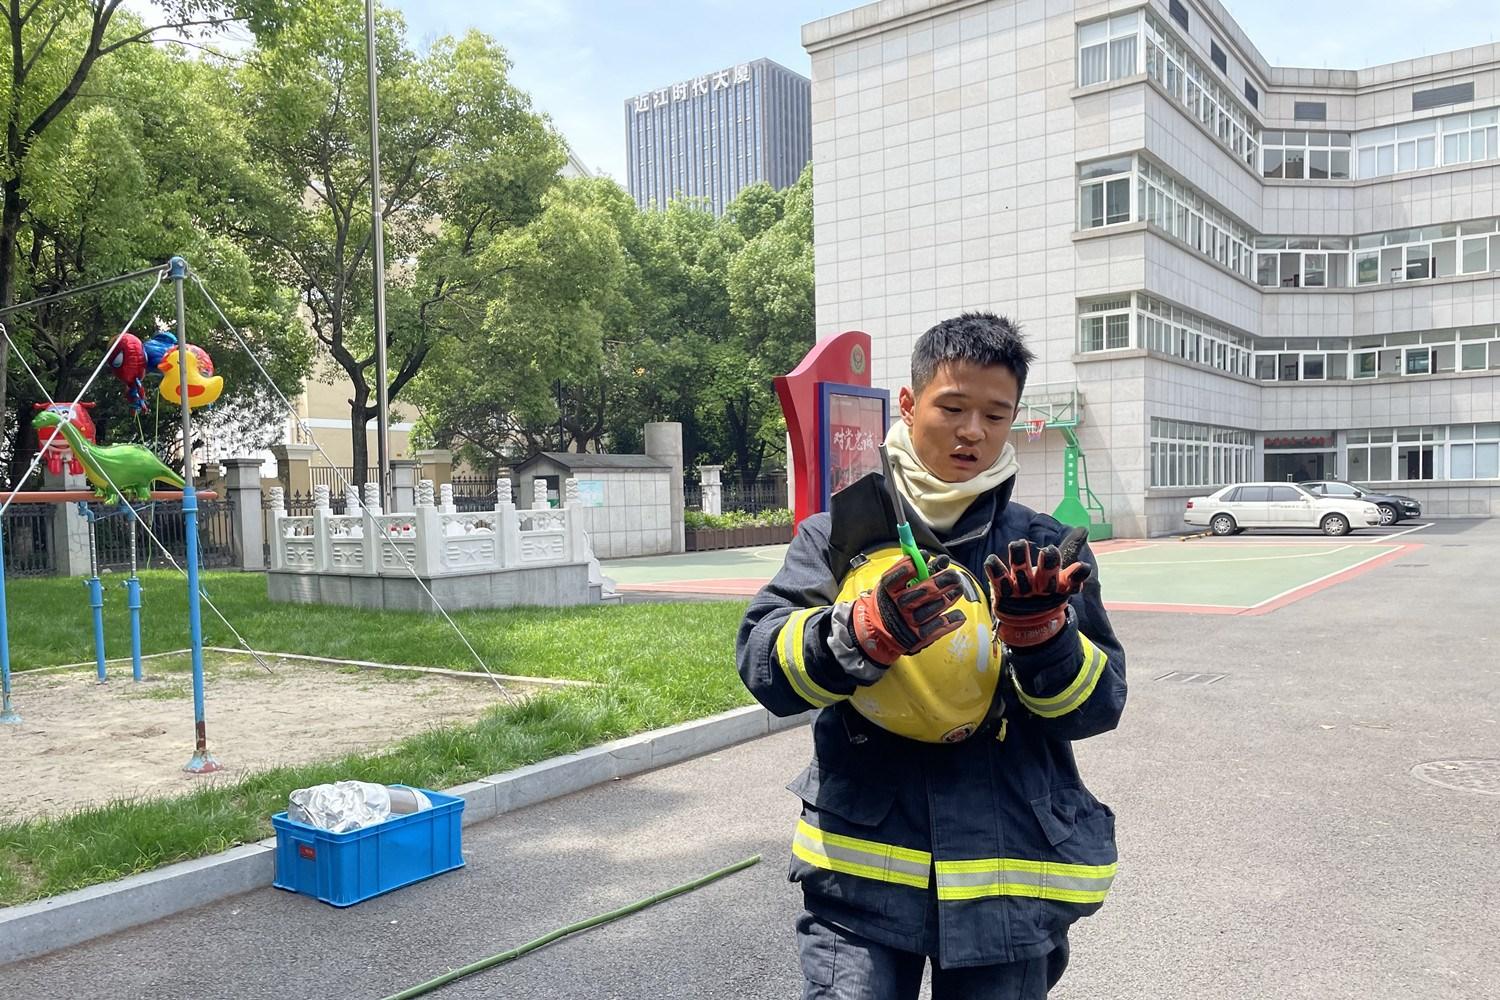 网红气球“威力”大——杭州上城消防实验测试“微型小手雷”氢气球